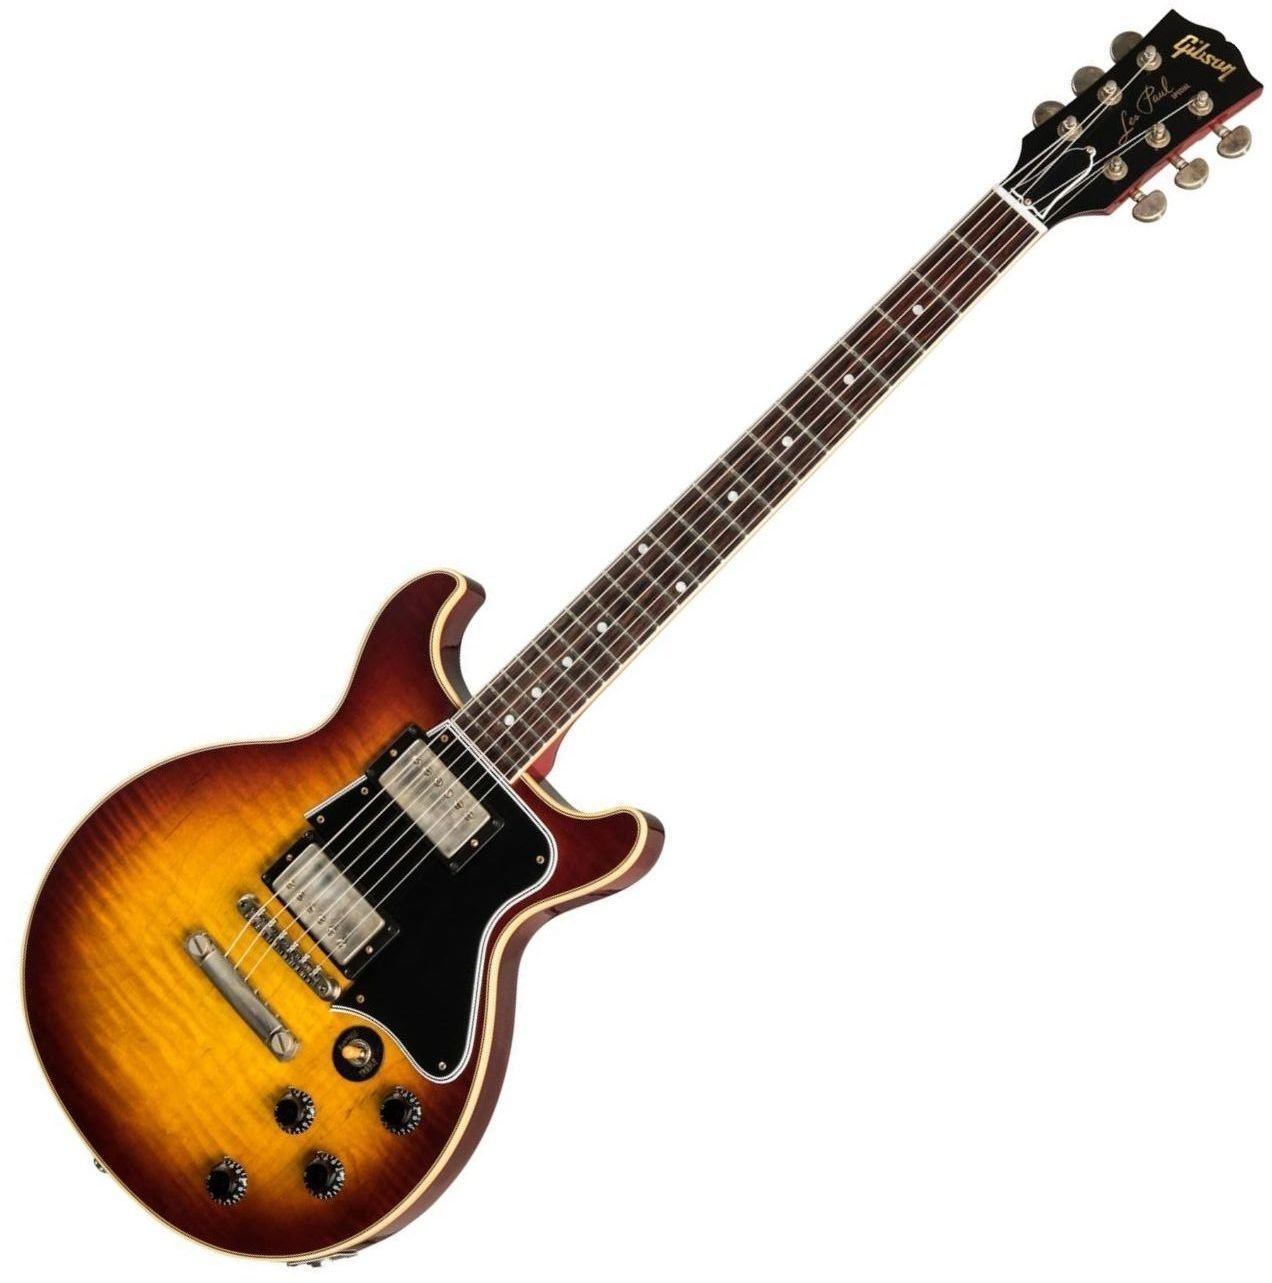 Ηλεκτρική Κιθάρα Gibson Les Paul Special DC Figured Maple Top VOS Bourbon Burst